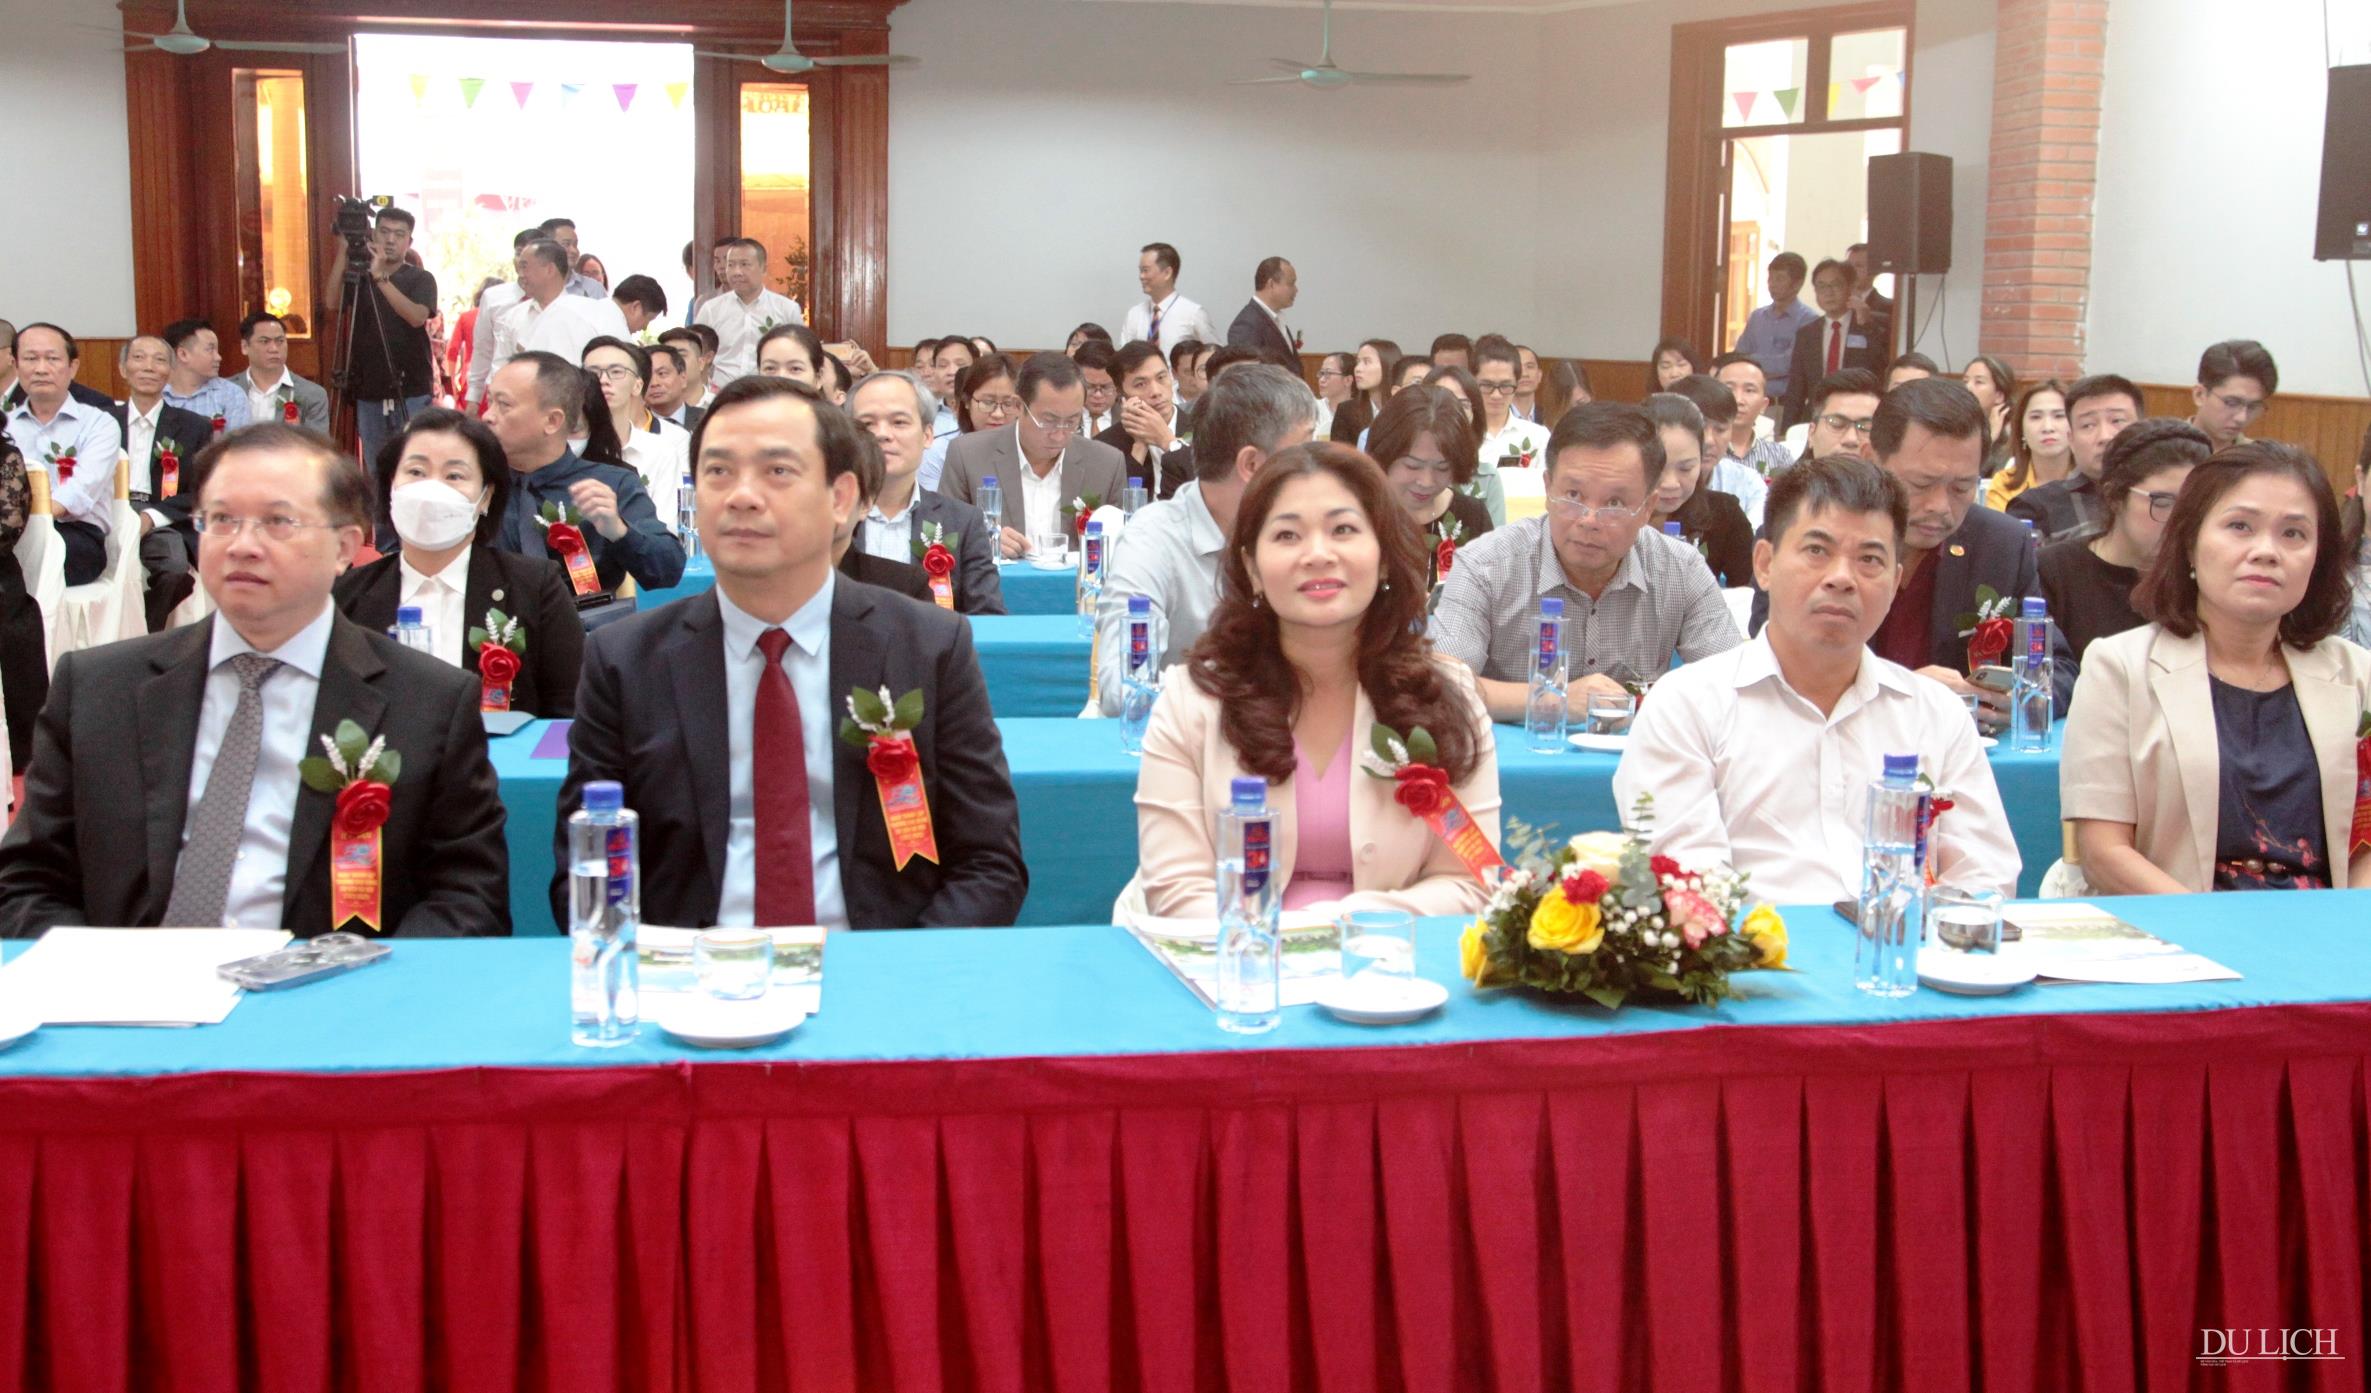  Thứ trưởng Bộ VHTTDL Tạ Quang Đông, Tổng cục trưởng TCDL Nguyễn Trùng Khánh tham dự buổi lễ